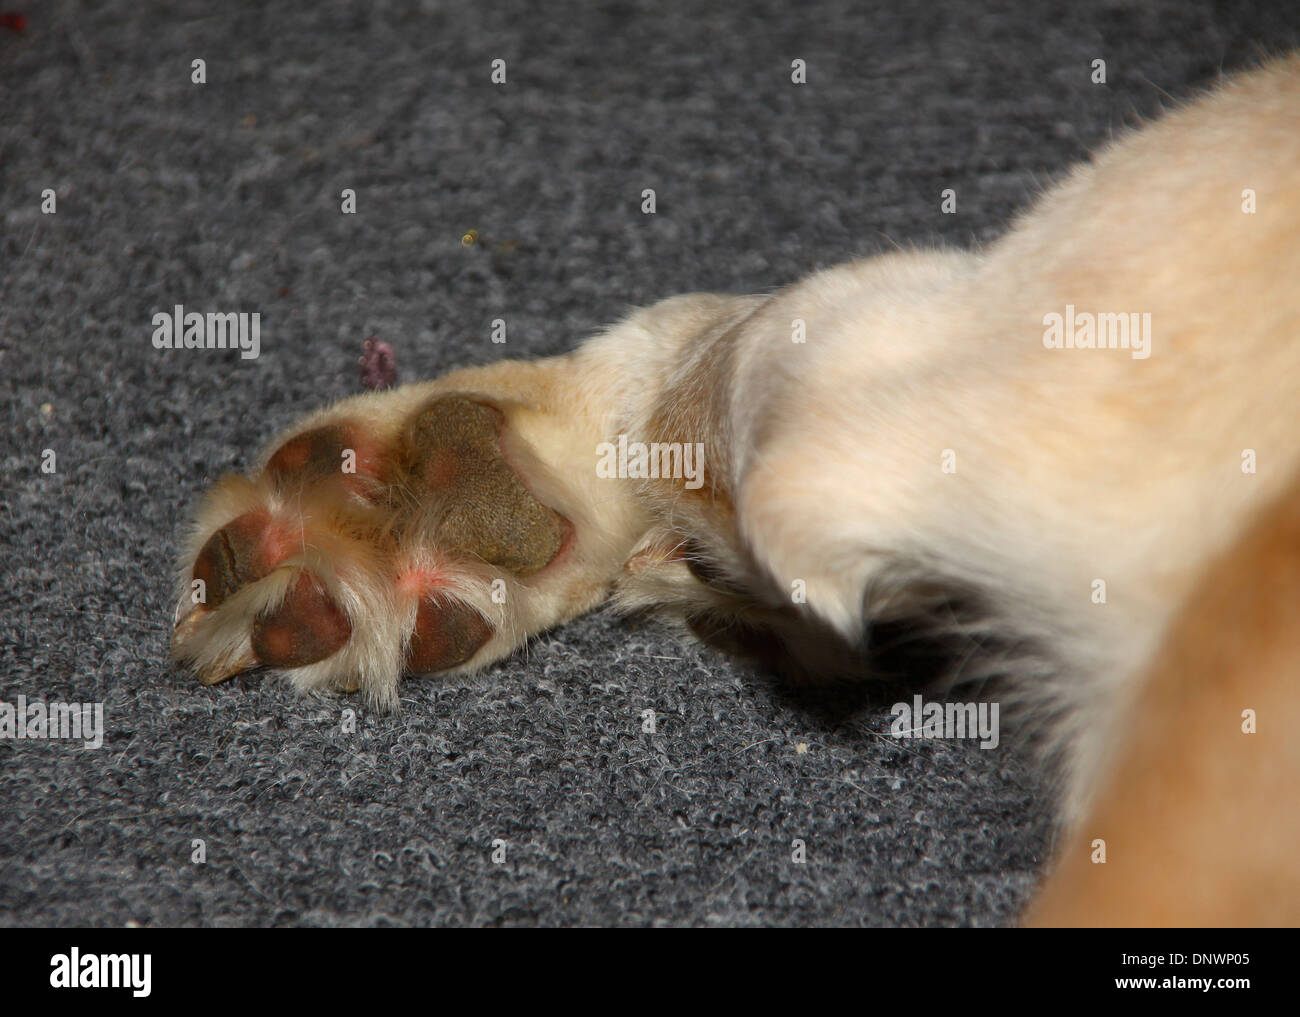 Hund Pfoten nah oben liegend auf Teppich Stockfotografie - Alamy